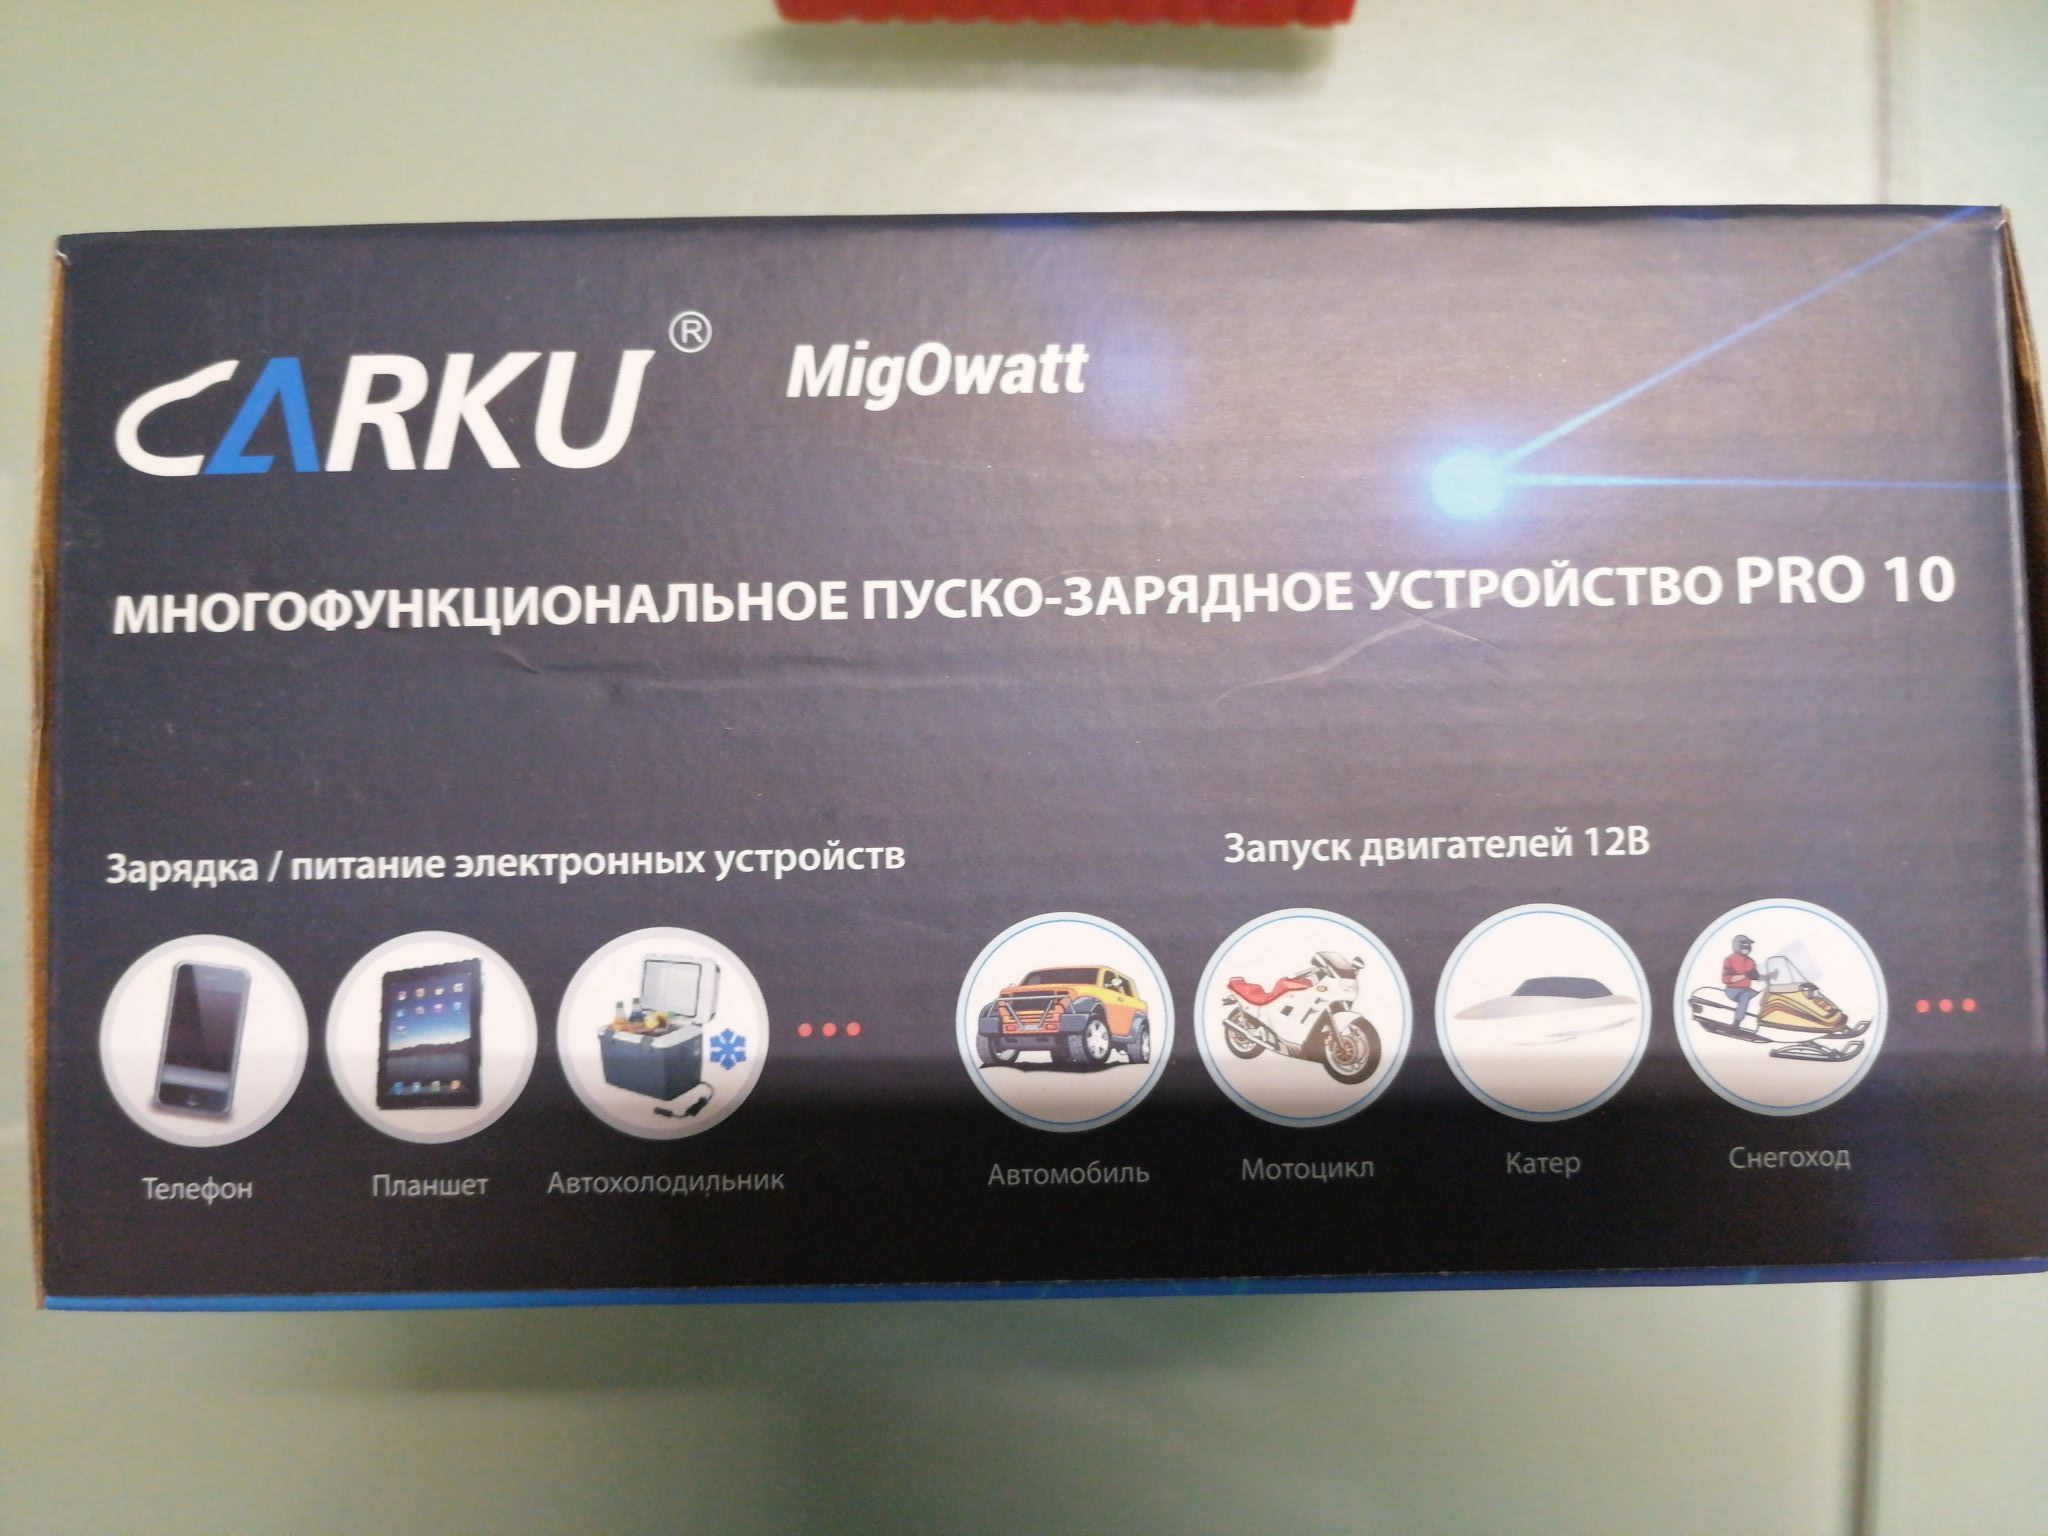 Carku pro купить. Carku 10. Пуско-зарядное устройство для автомобиля Carku Pro-10. Пуско зарядное устройство Carku. Портативное пуско-зарядное устройство Carku Pro-10 13000 Mah.